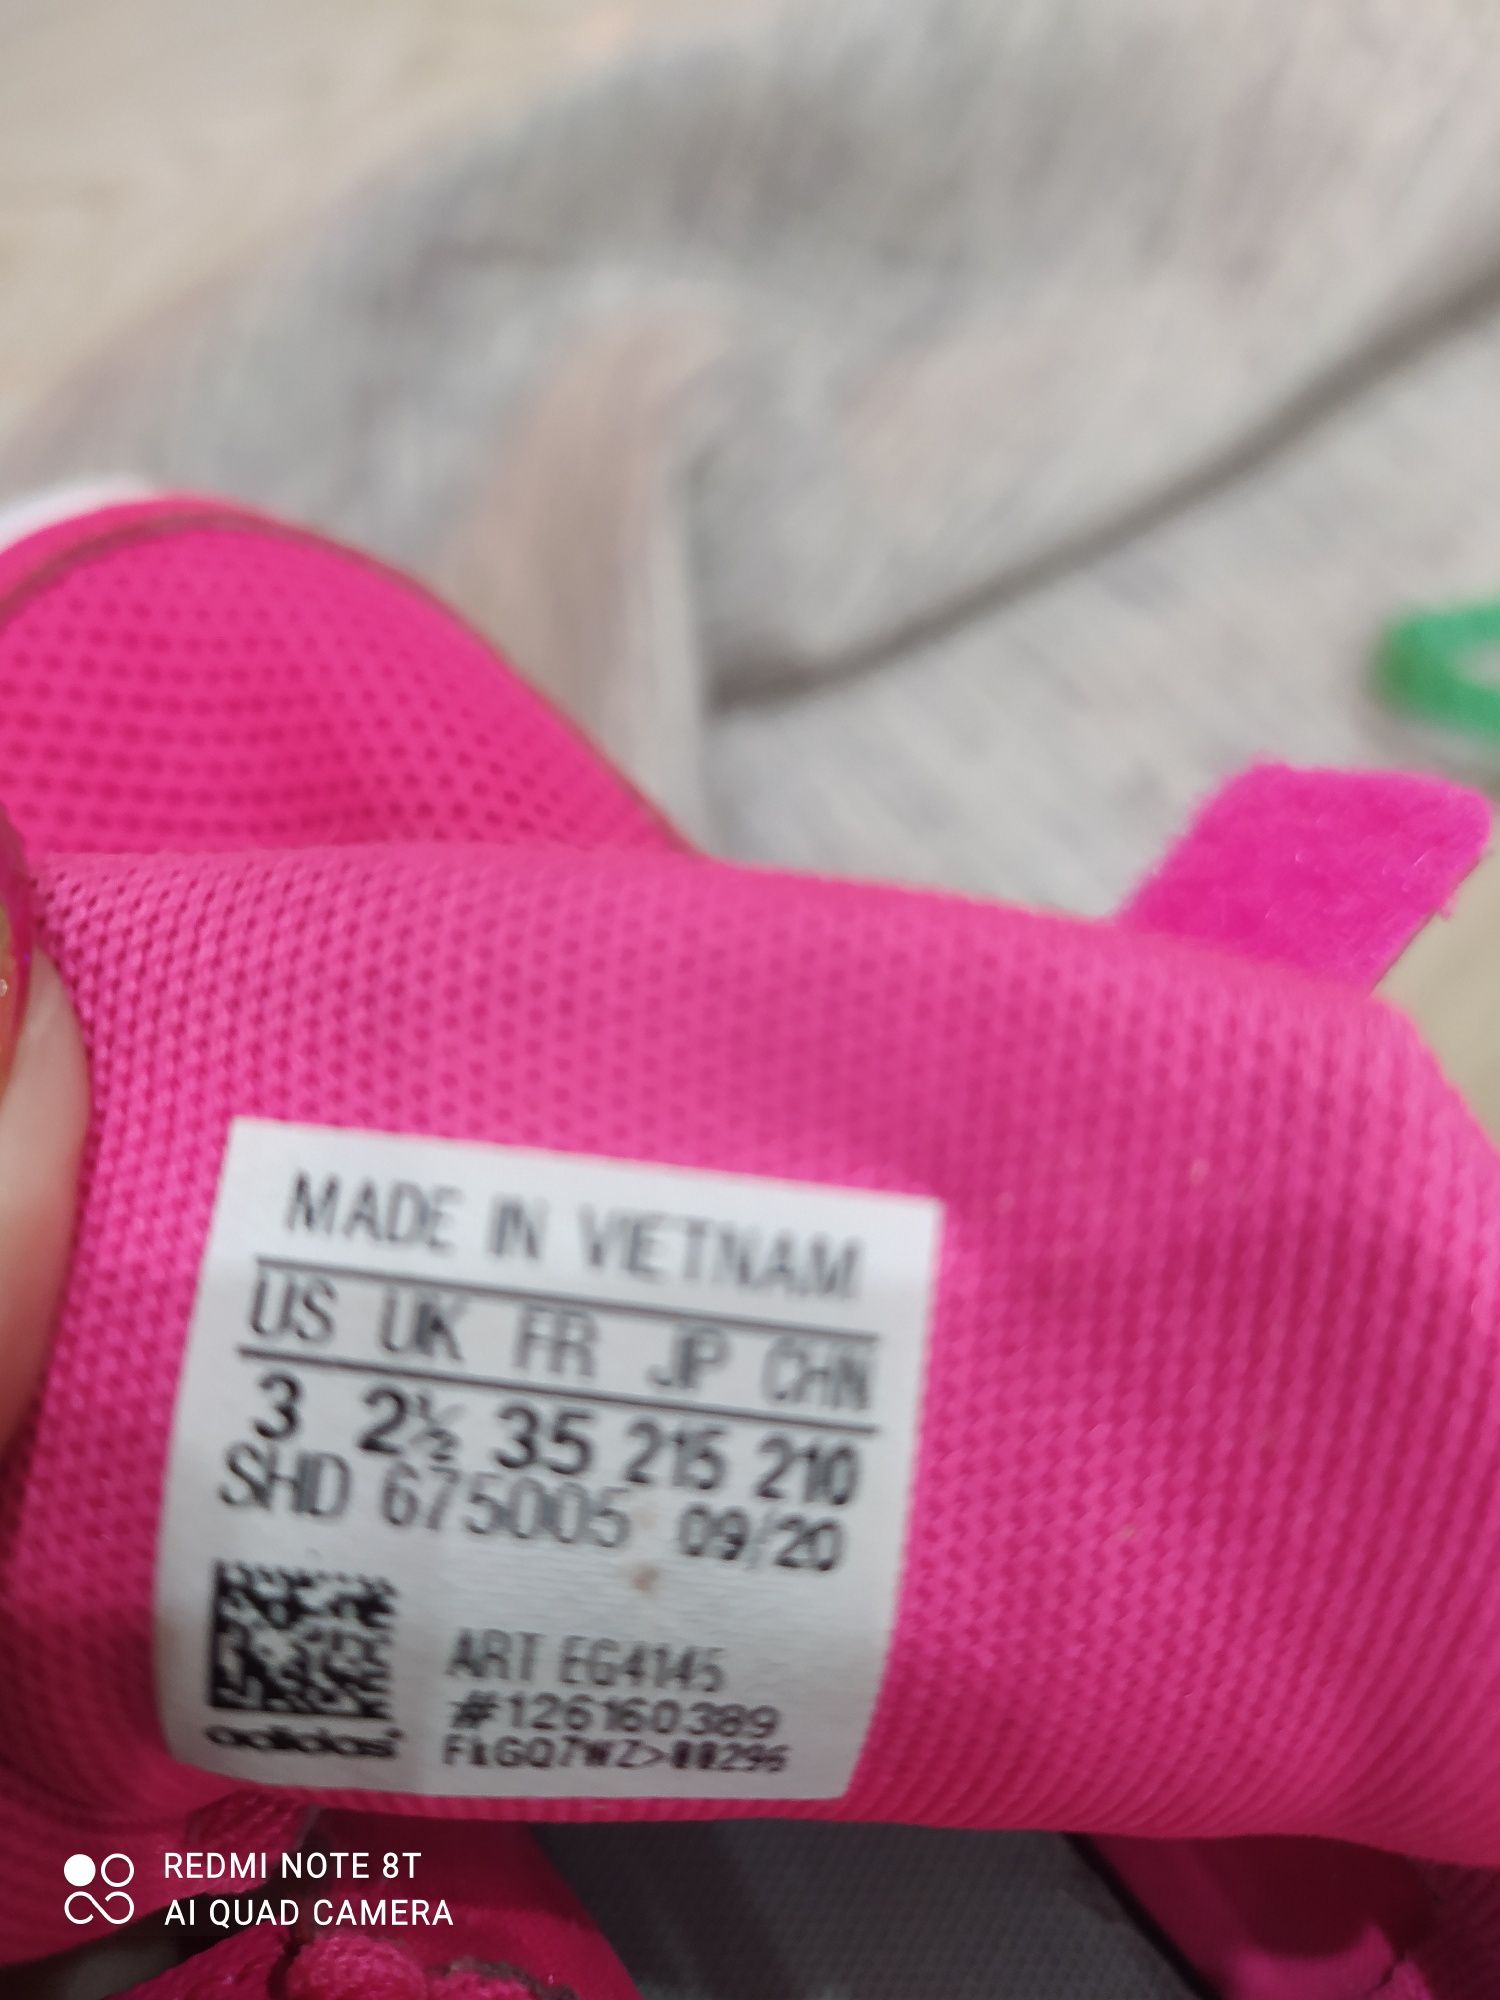 Buty adidas 35 różowe na rzepy